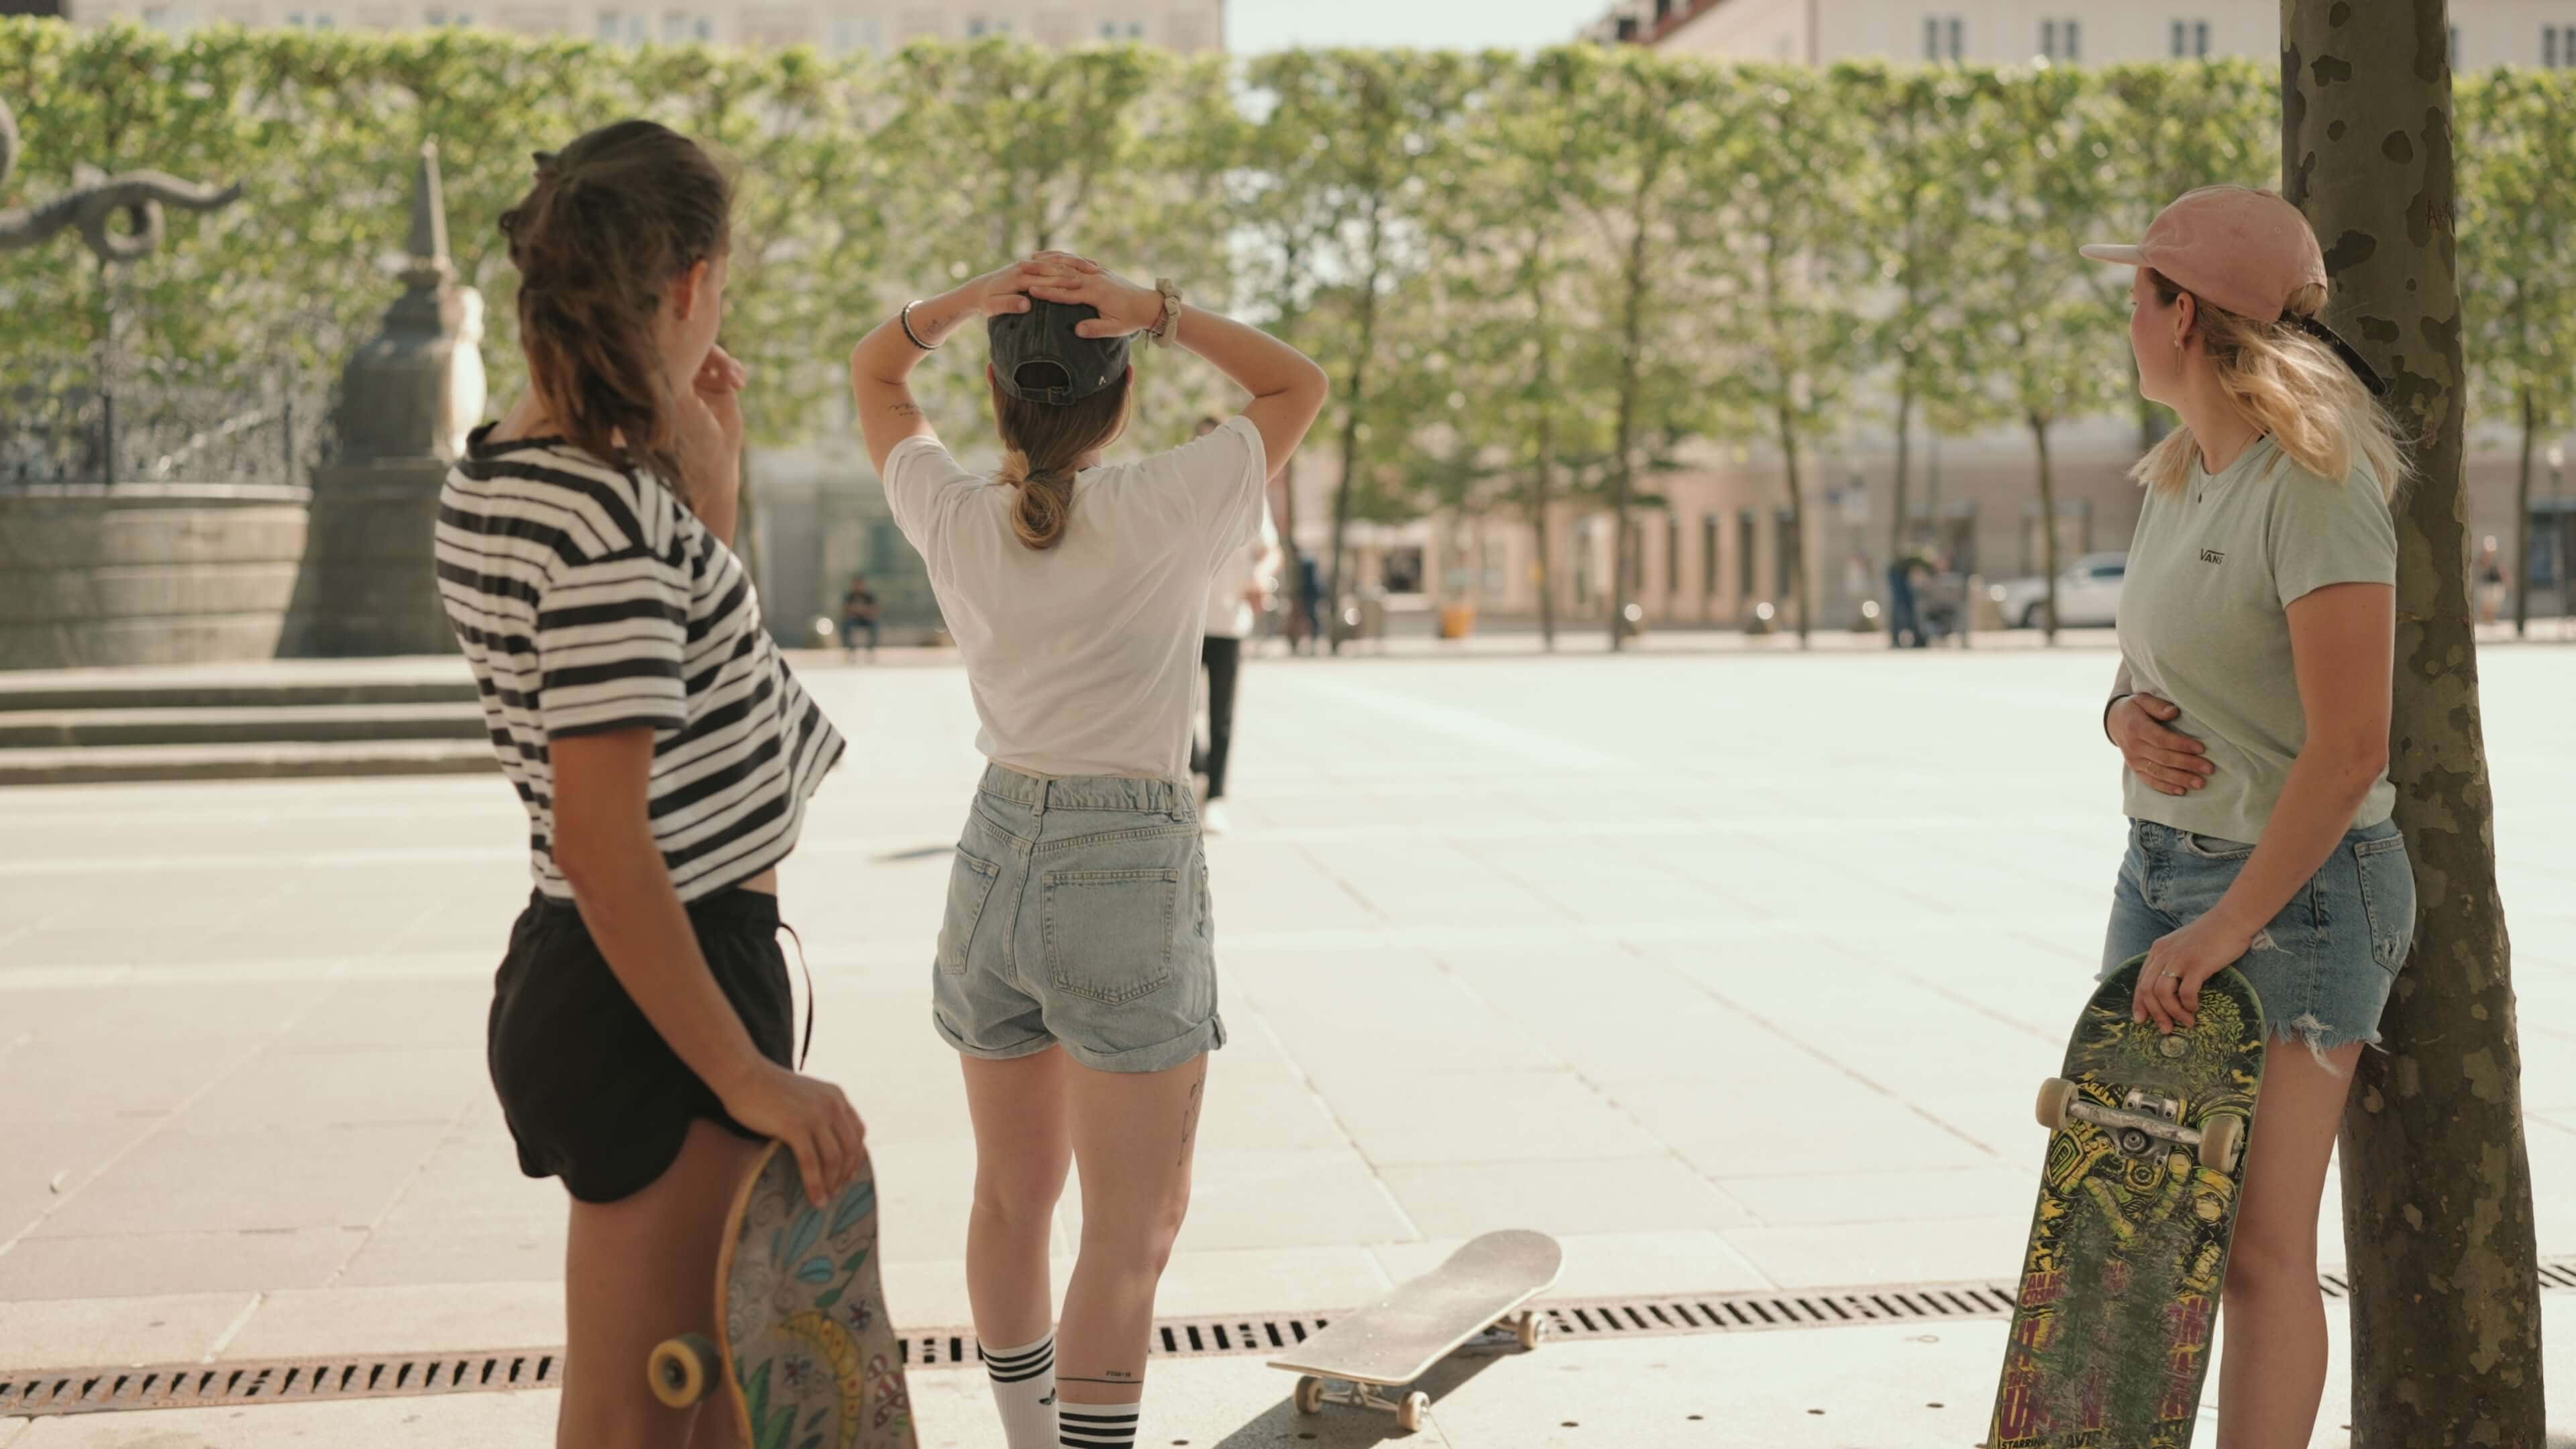 Skaterinnen in Shorts und T-Shirts mit ihren Skateboards